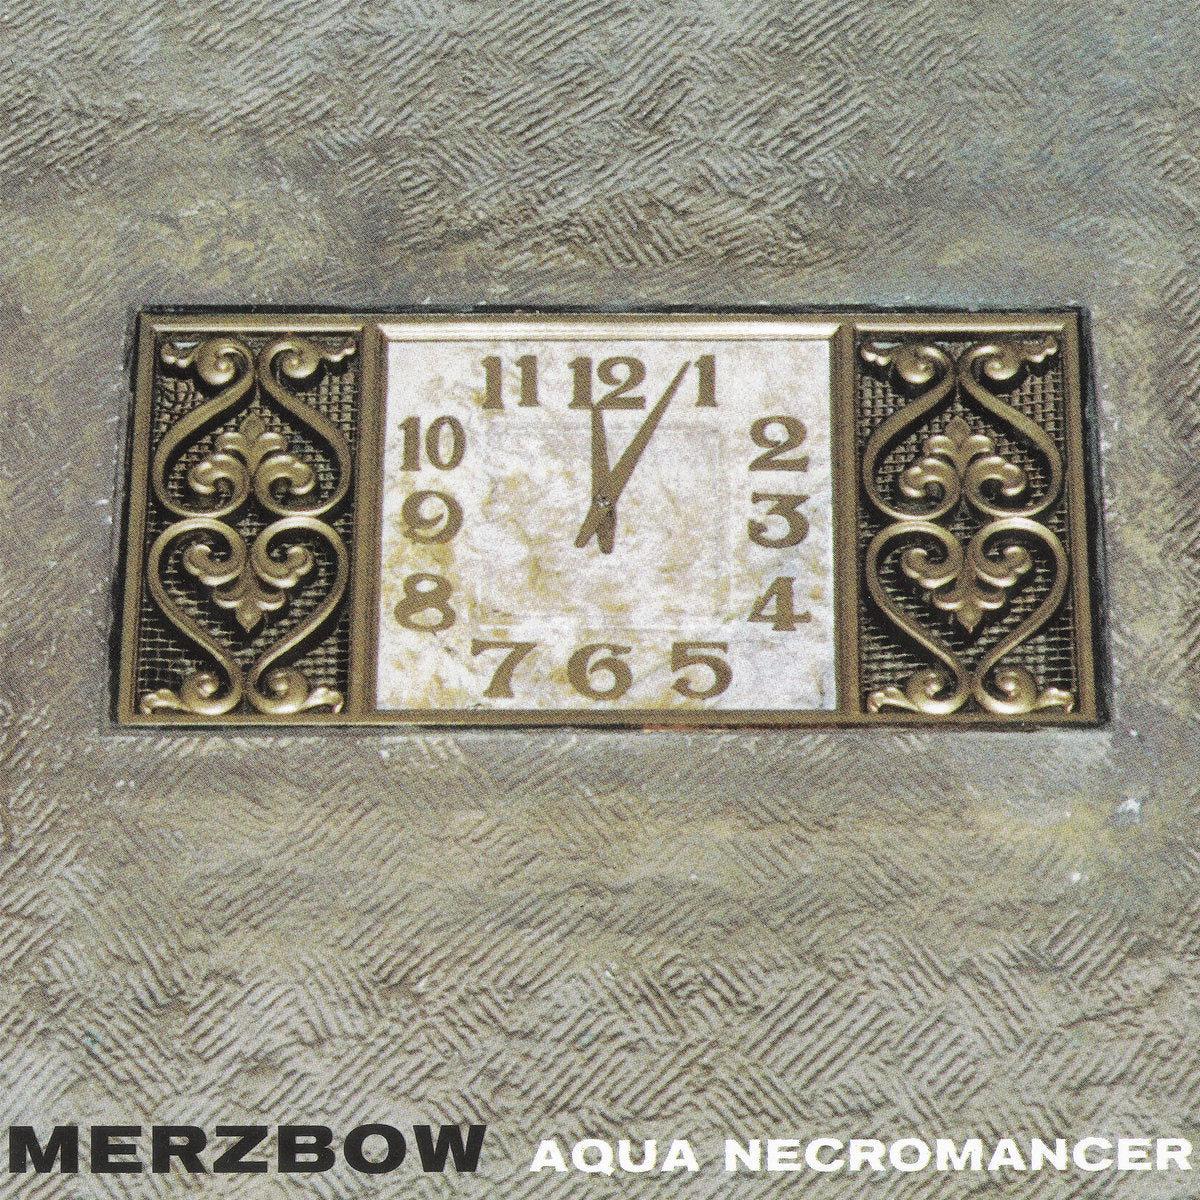 Merzbow - Aqua Necromancer (Expanded) 2LP